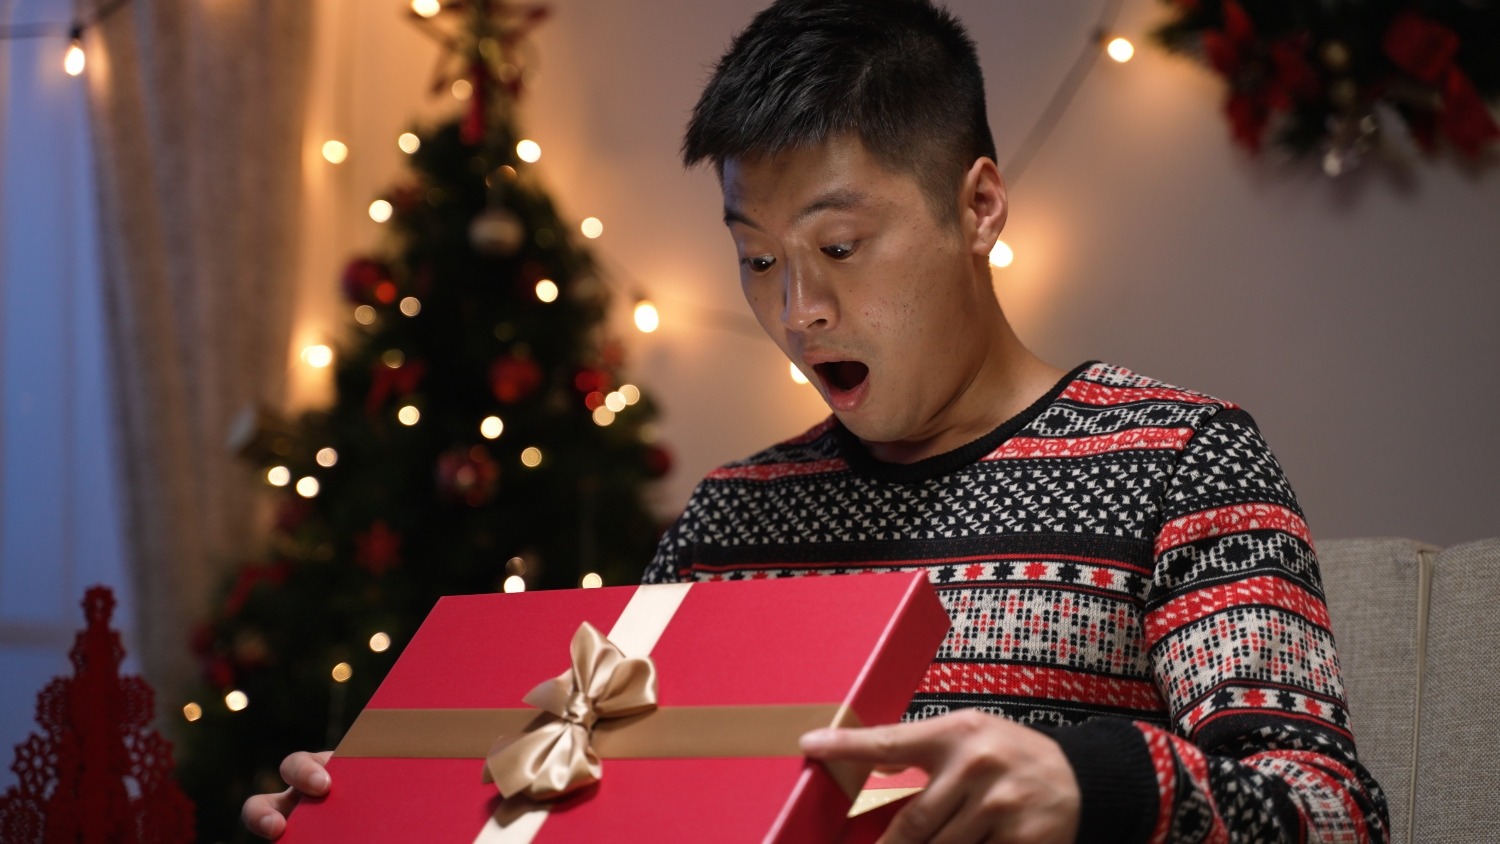 9 cadeaux de Noël… pour prendre de l'avance!